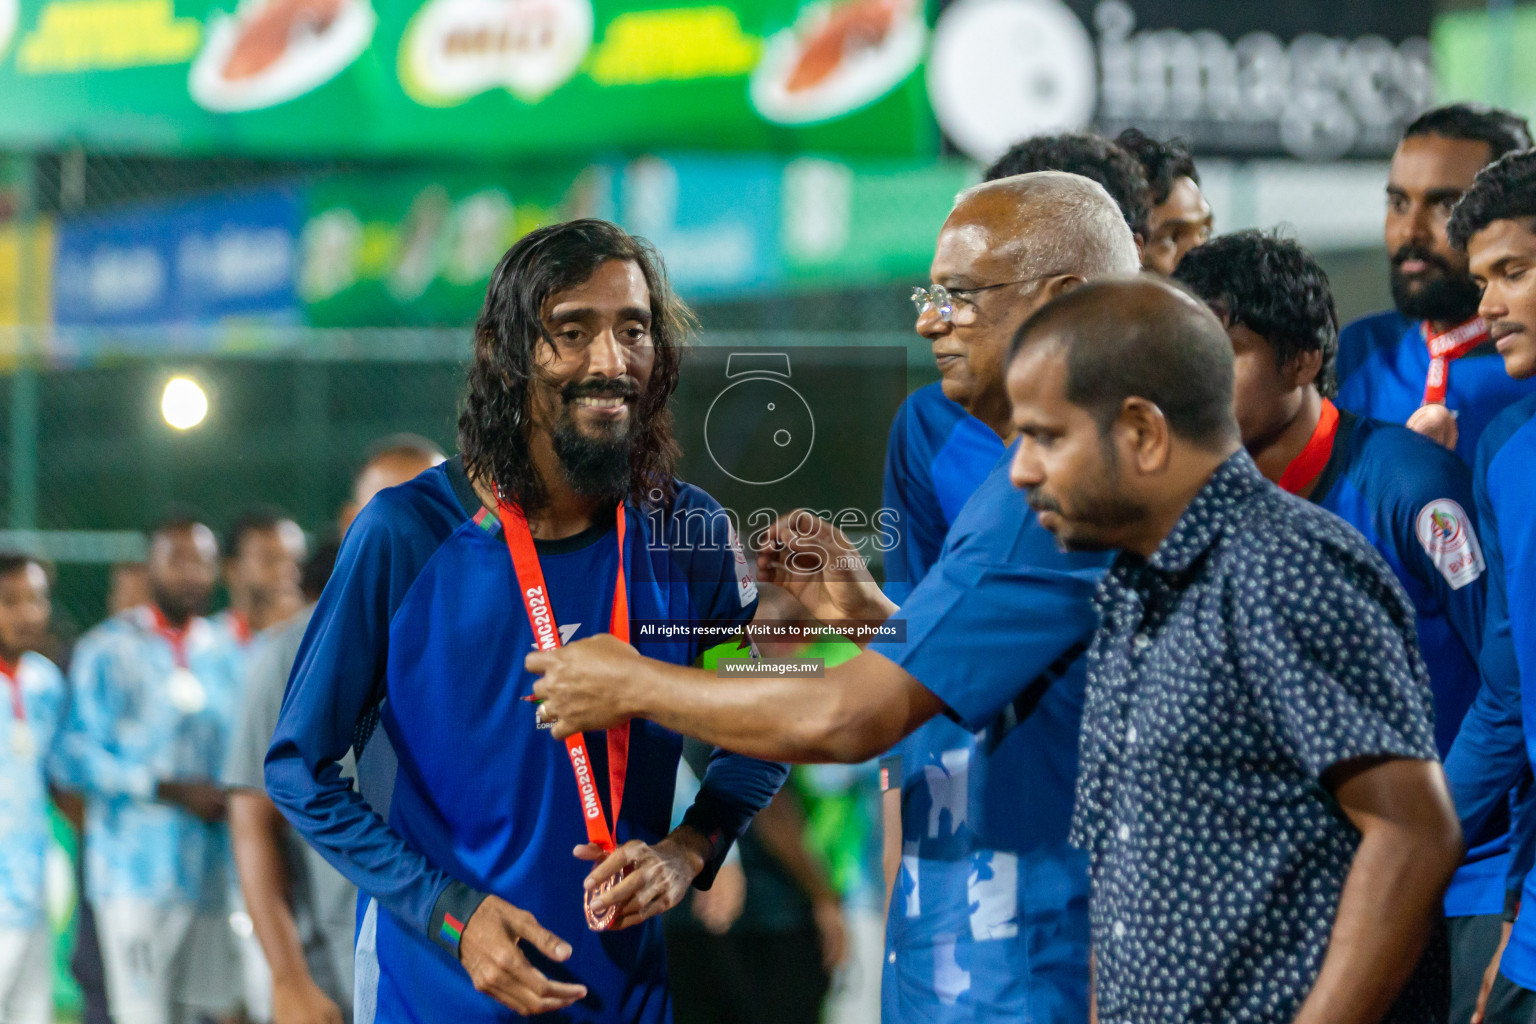 Team Fenaka vs MPL in the Finals of Club Maldives 2022 was held in Hulhumale', Maldives on Saturday, 5th November 2022. Photos: Nausham Waheed, Hassan Simah, Mohamed Mahfooz Moosa / images.mv